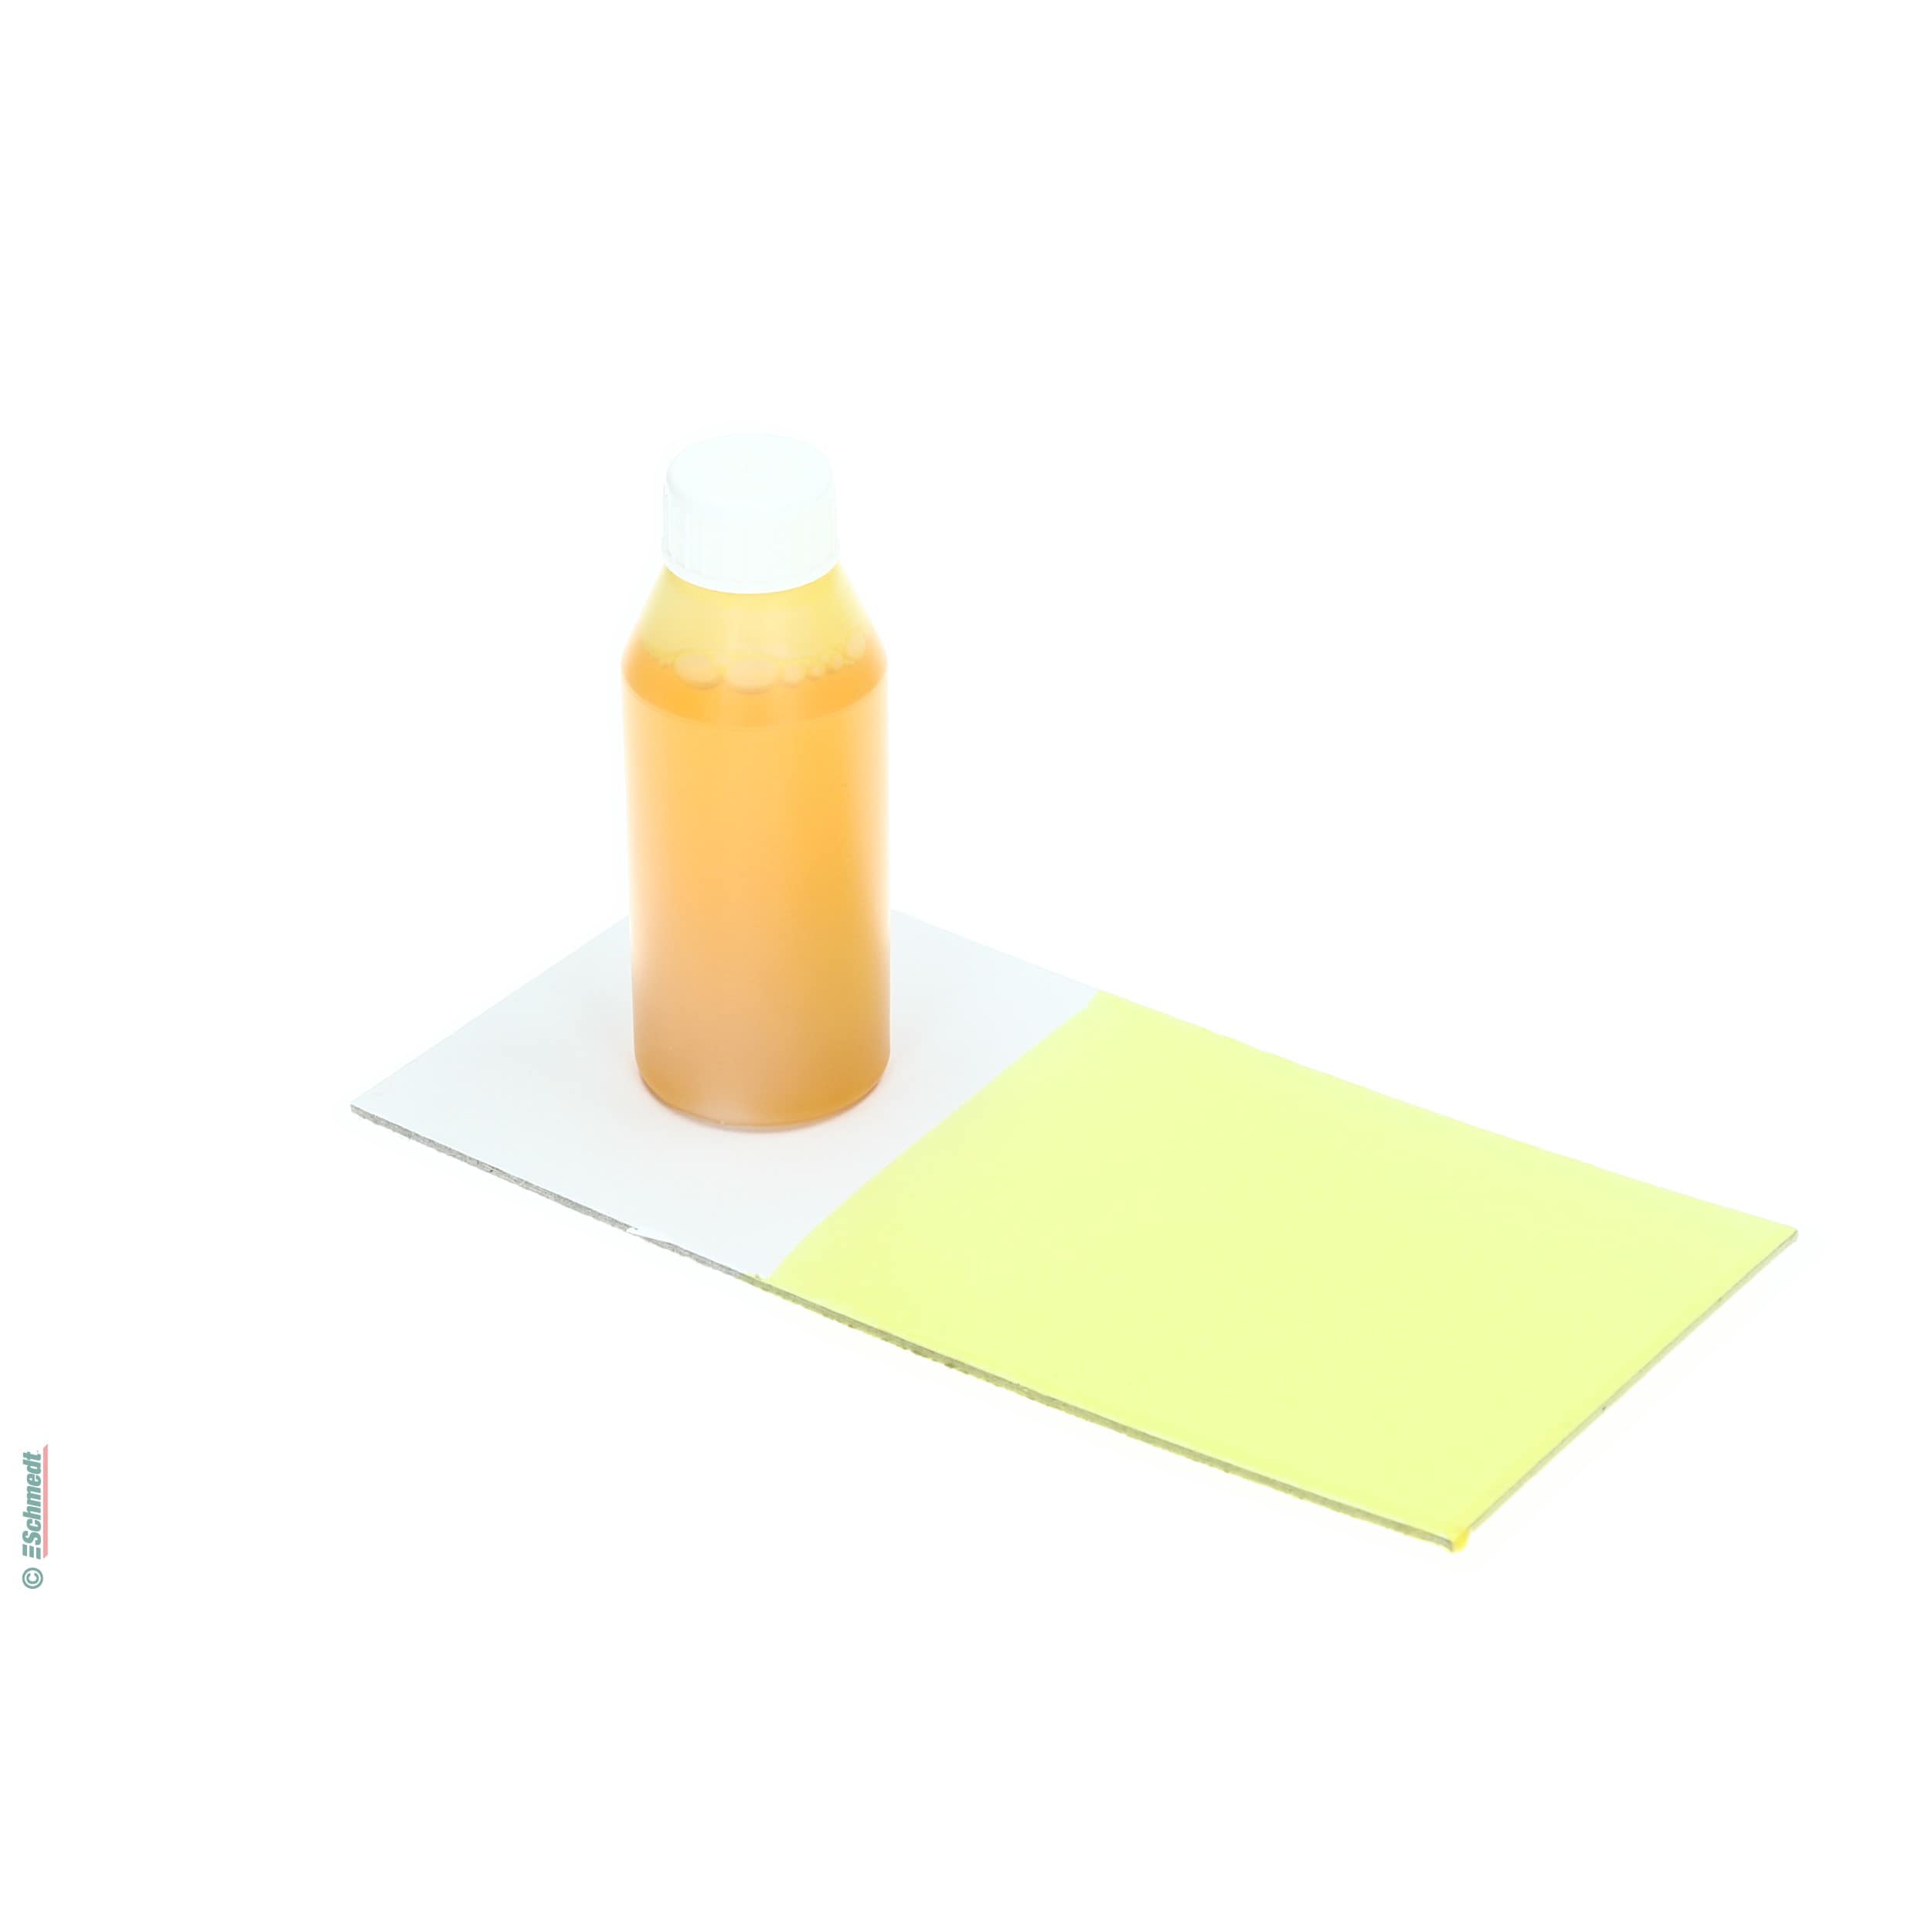 Pintura para cola - Color amarillo - Contenido Botella / 100 ml - para darle color a las colas de dispersión como, por ejemplo, cola para el... - imagen-1